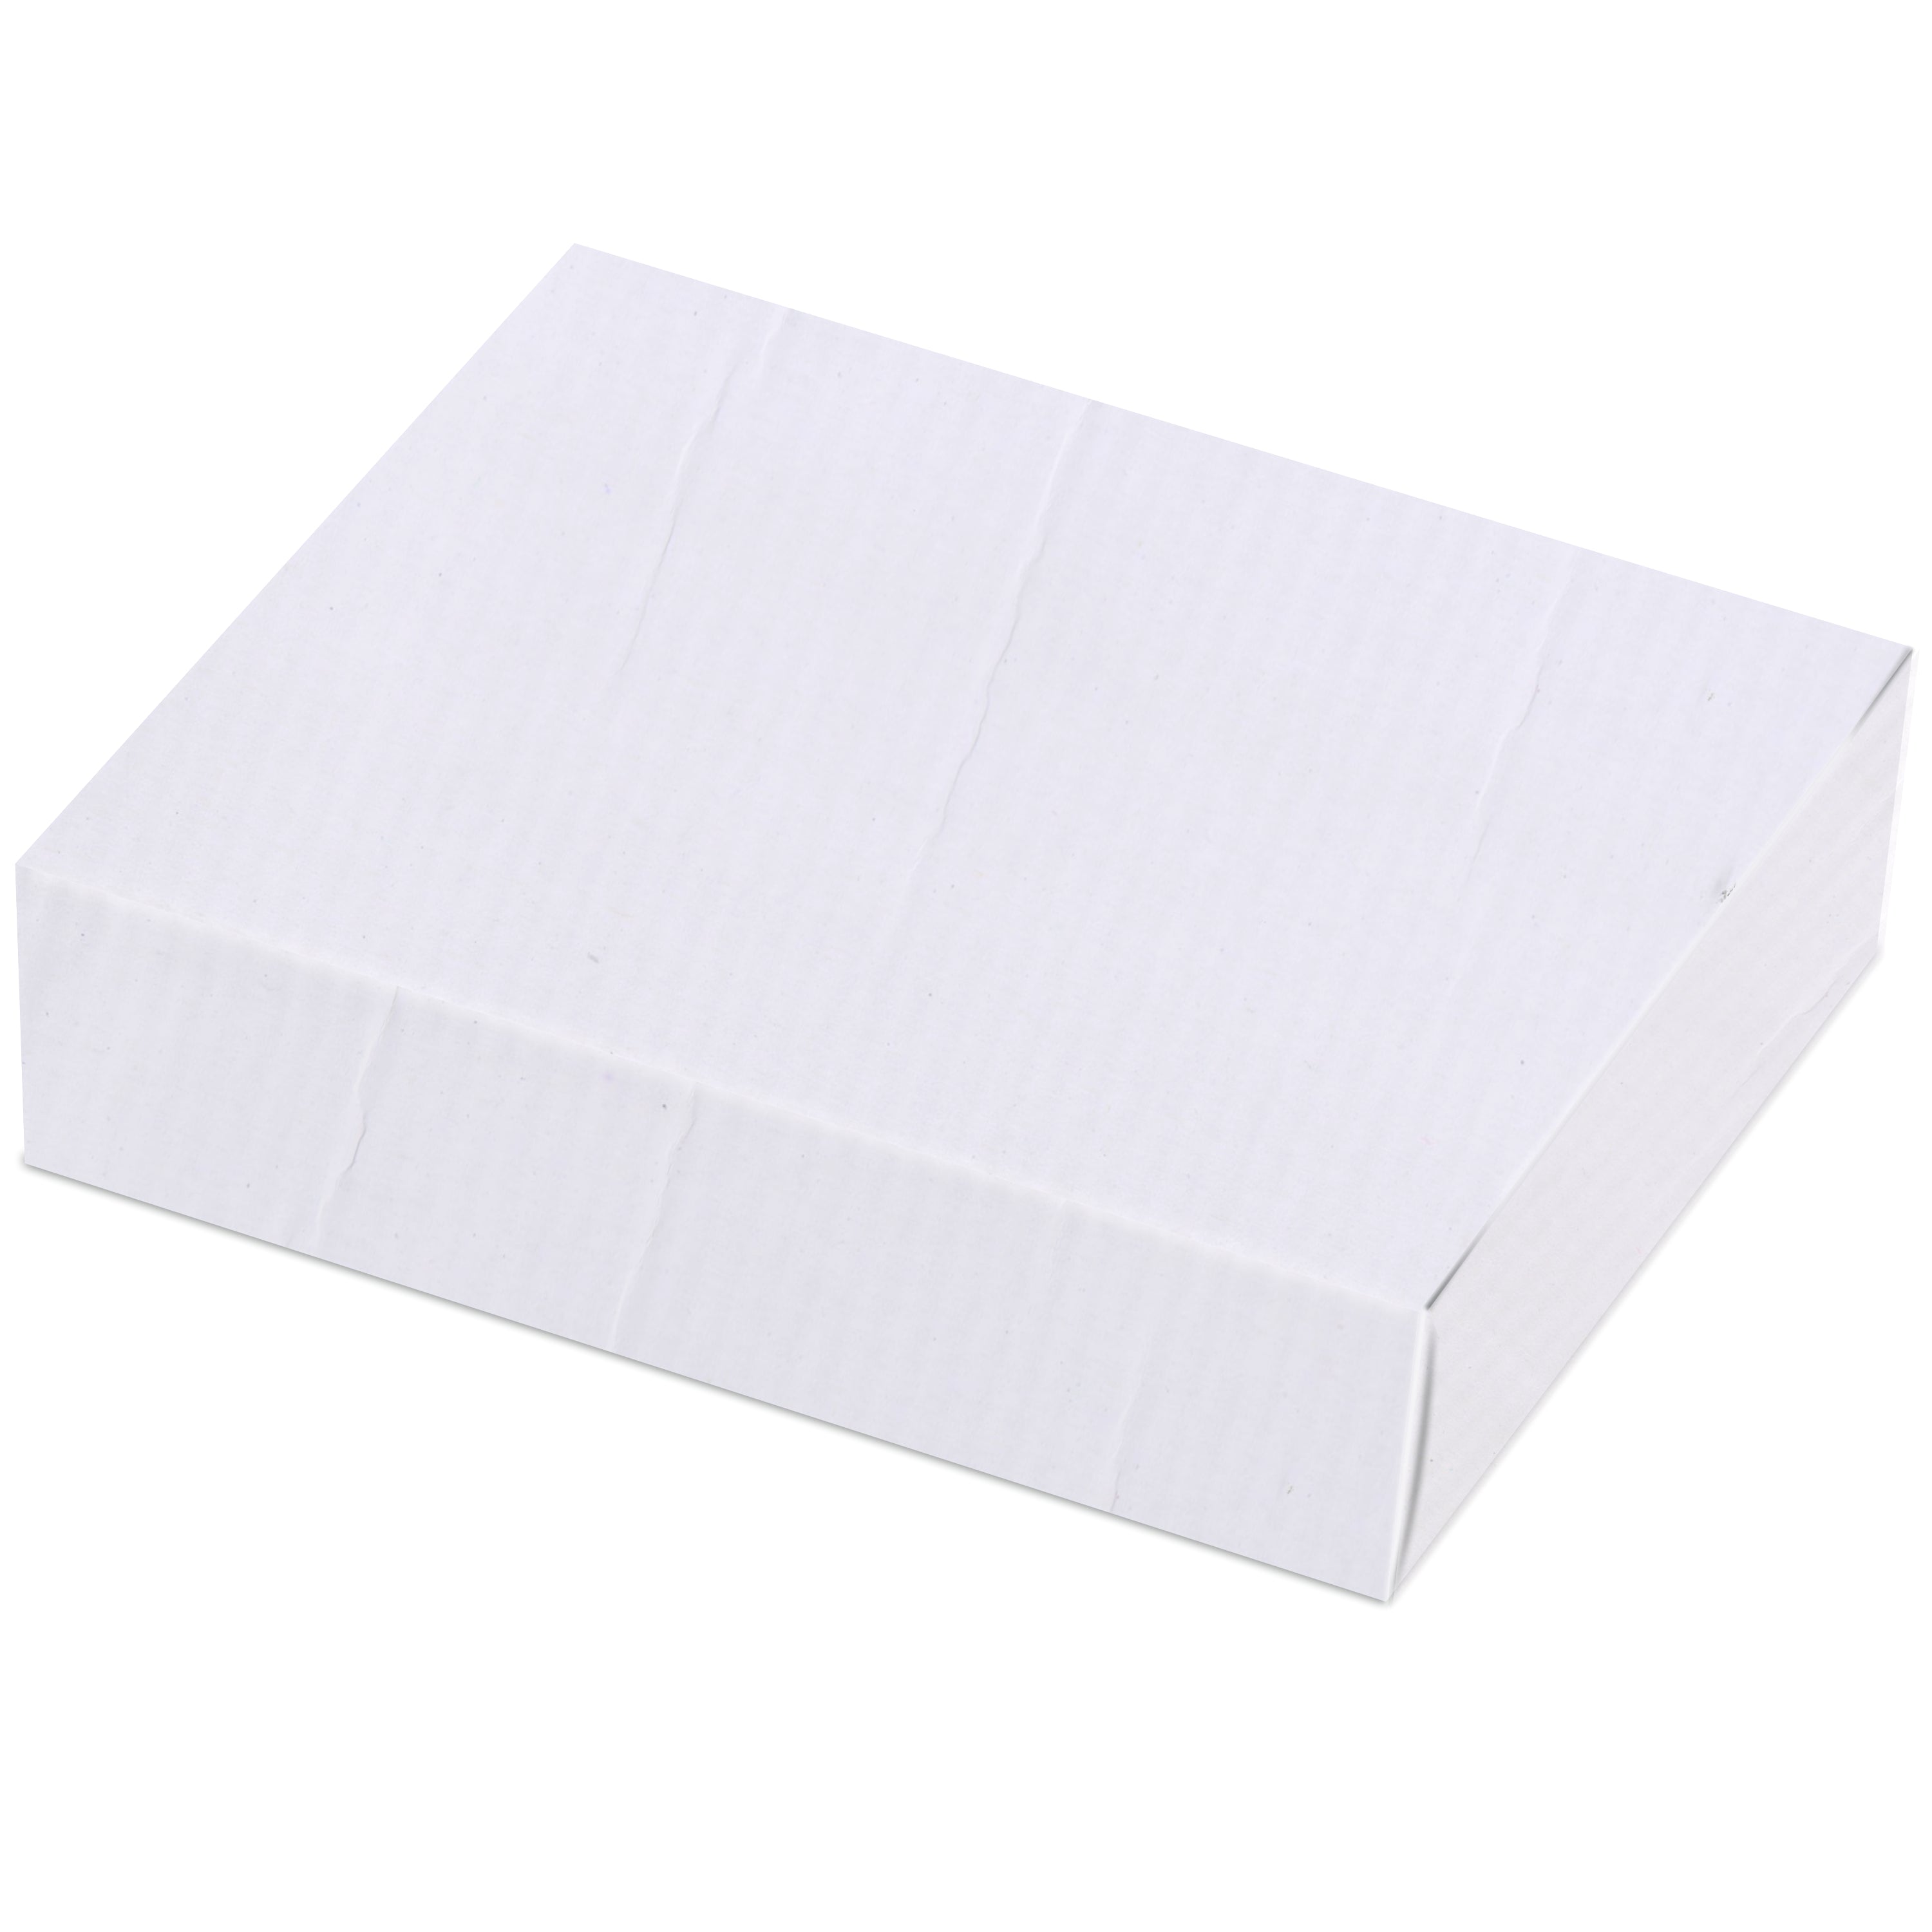 Zenvista Premium White Corrugated Box |13 x 6.5 x 16 cm | Pack of 10